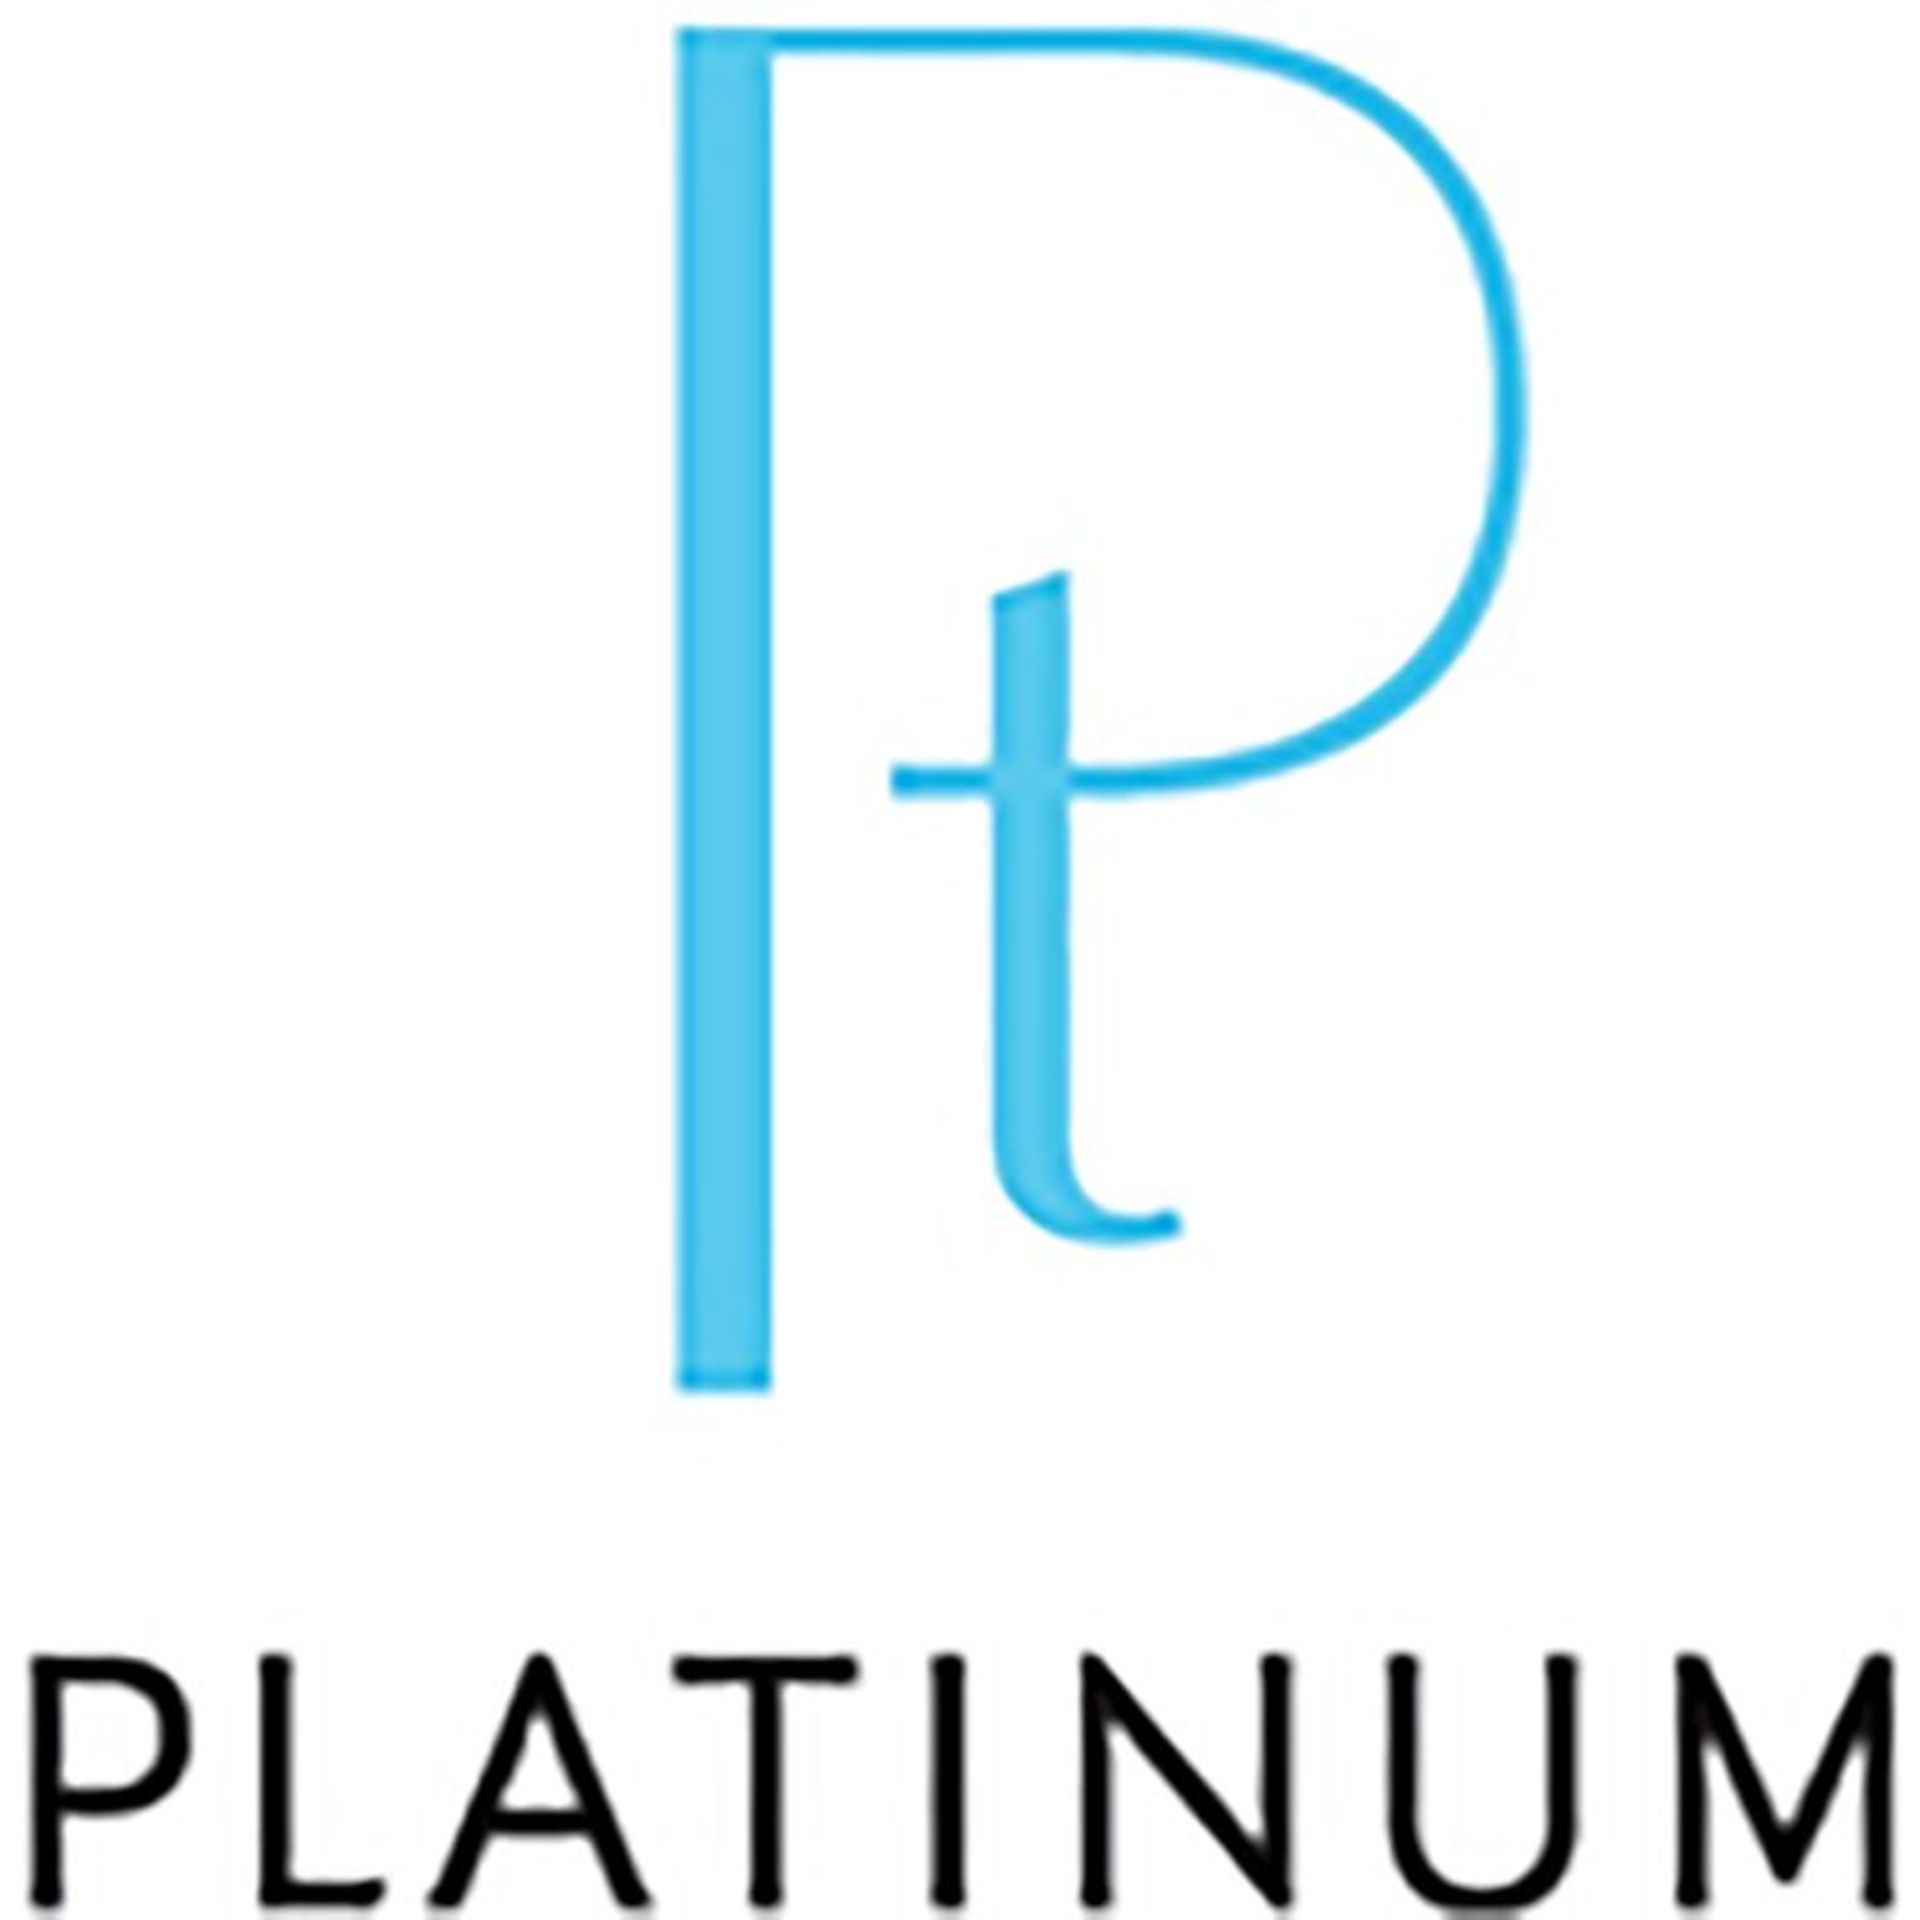 Amethyst earrings in platinum, Metal Platinum 900, - Image 2 of 3